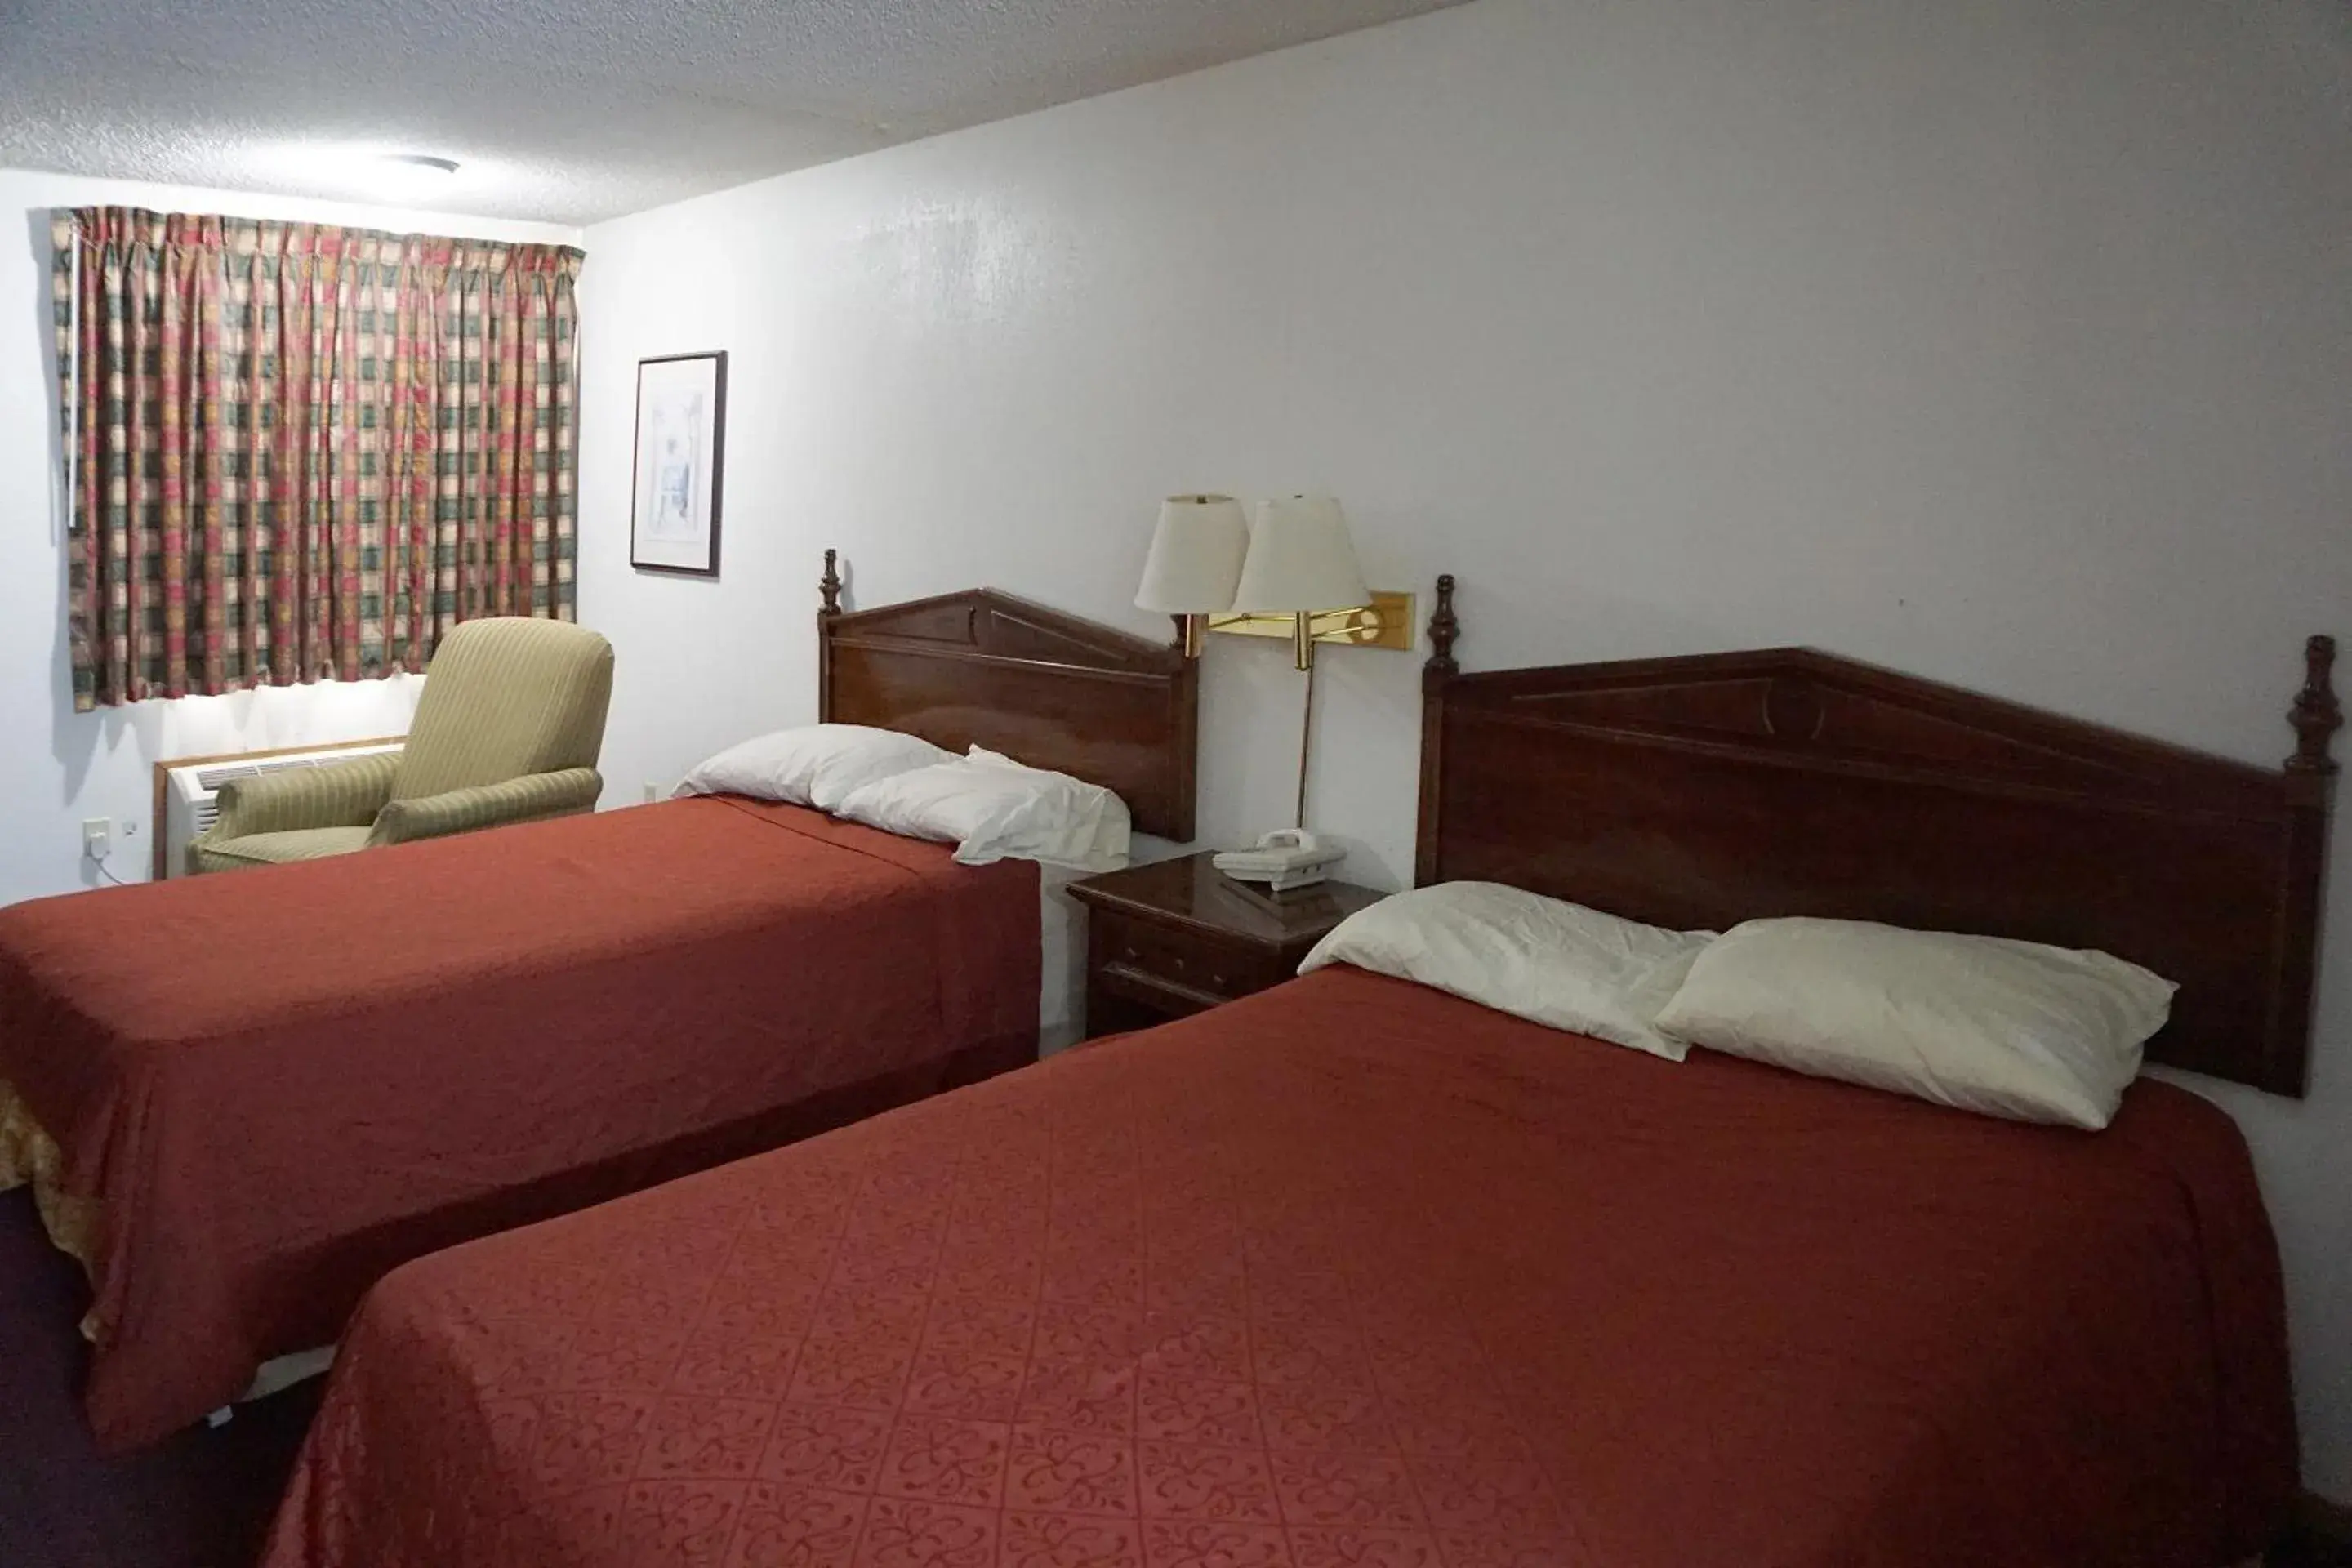 Bedroom, Room Photo in OYO Hotel Altus N Main St